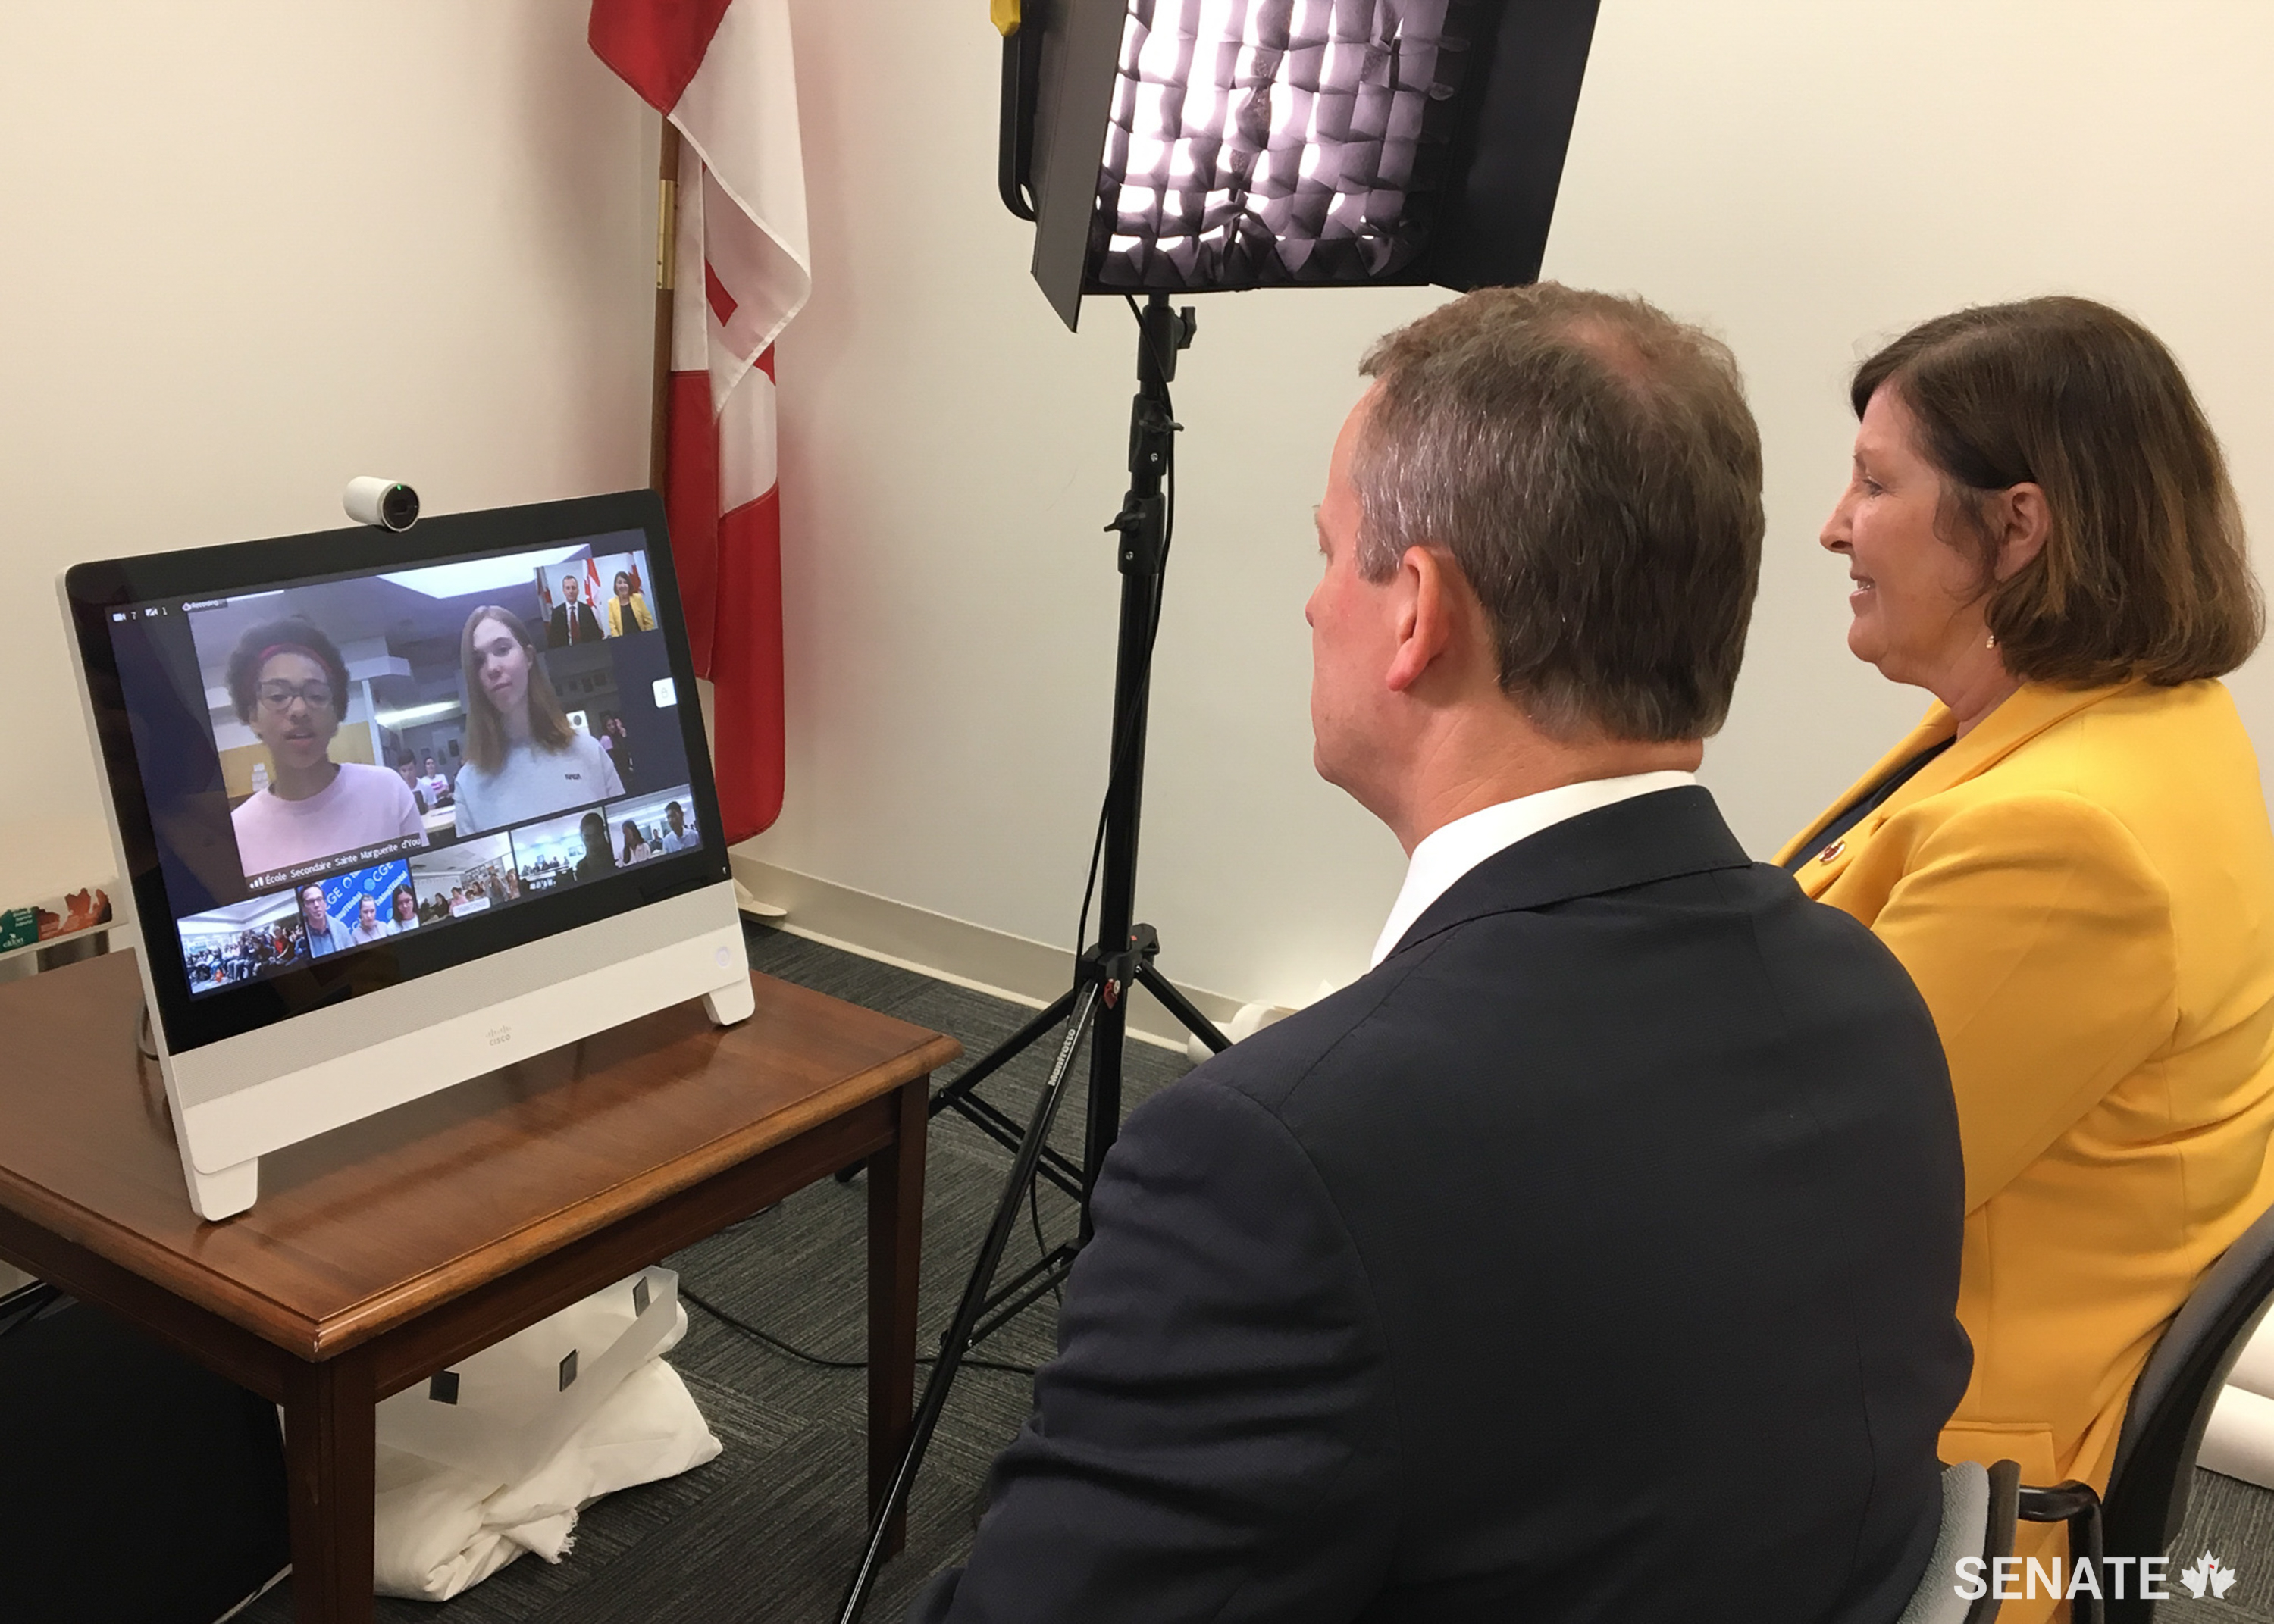 Le jeudi 16 mai 2019 — Les sénateurs David M. Wells et Mary Coyle s’adressent à des élèves à travers le pays par vidéoconférence en direct, organisée par SENgage et le Centre for Global Education. Cette initiative a rassemblé des étudiants âgés de 12 à 15 ans, dans six salles de classe, de la Colombie-Britannique, de l’Alberta, de l’Ontario et du Nouveau-Brunswick pour une heure de discussion franche sur le fonctionnement du Sénat, des projets de loi récents et la façon dont les sénateurs représentent les Canadiens au Parlement.